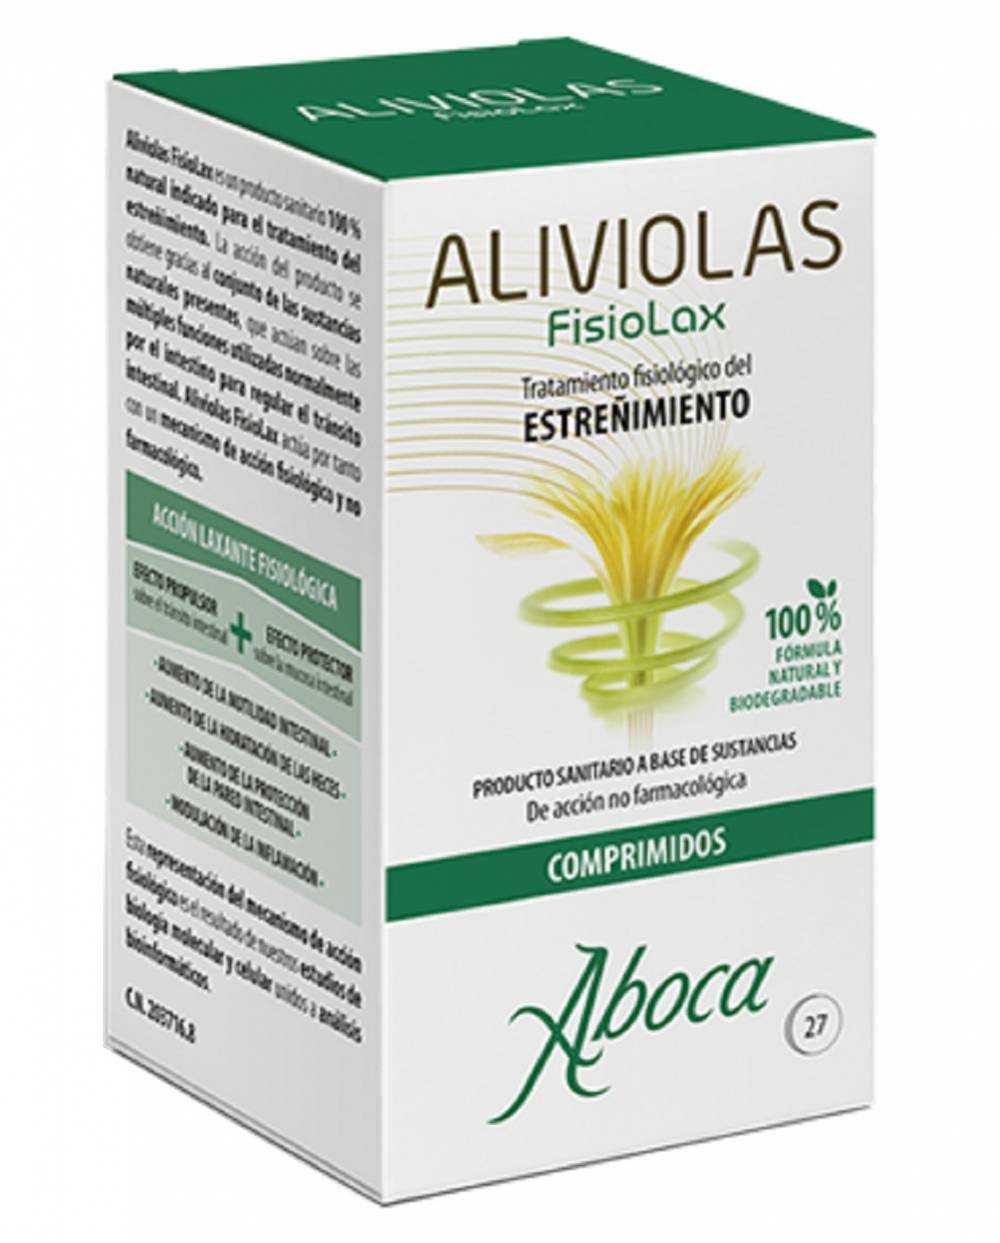 Aliviolas Fisiolax - 27 comprimidos